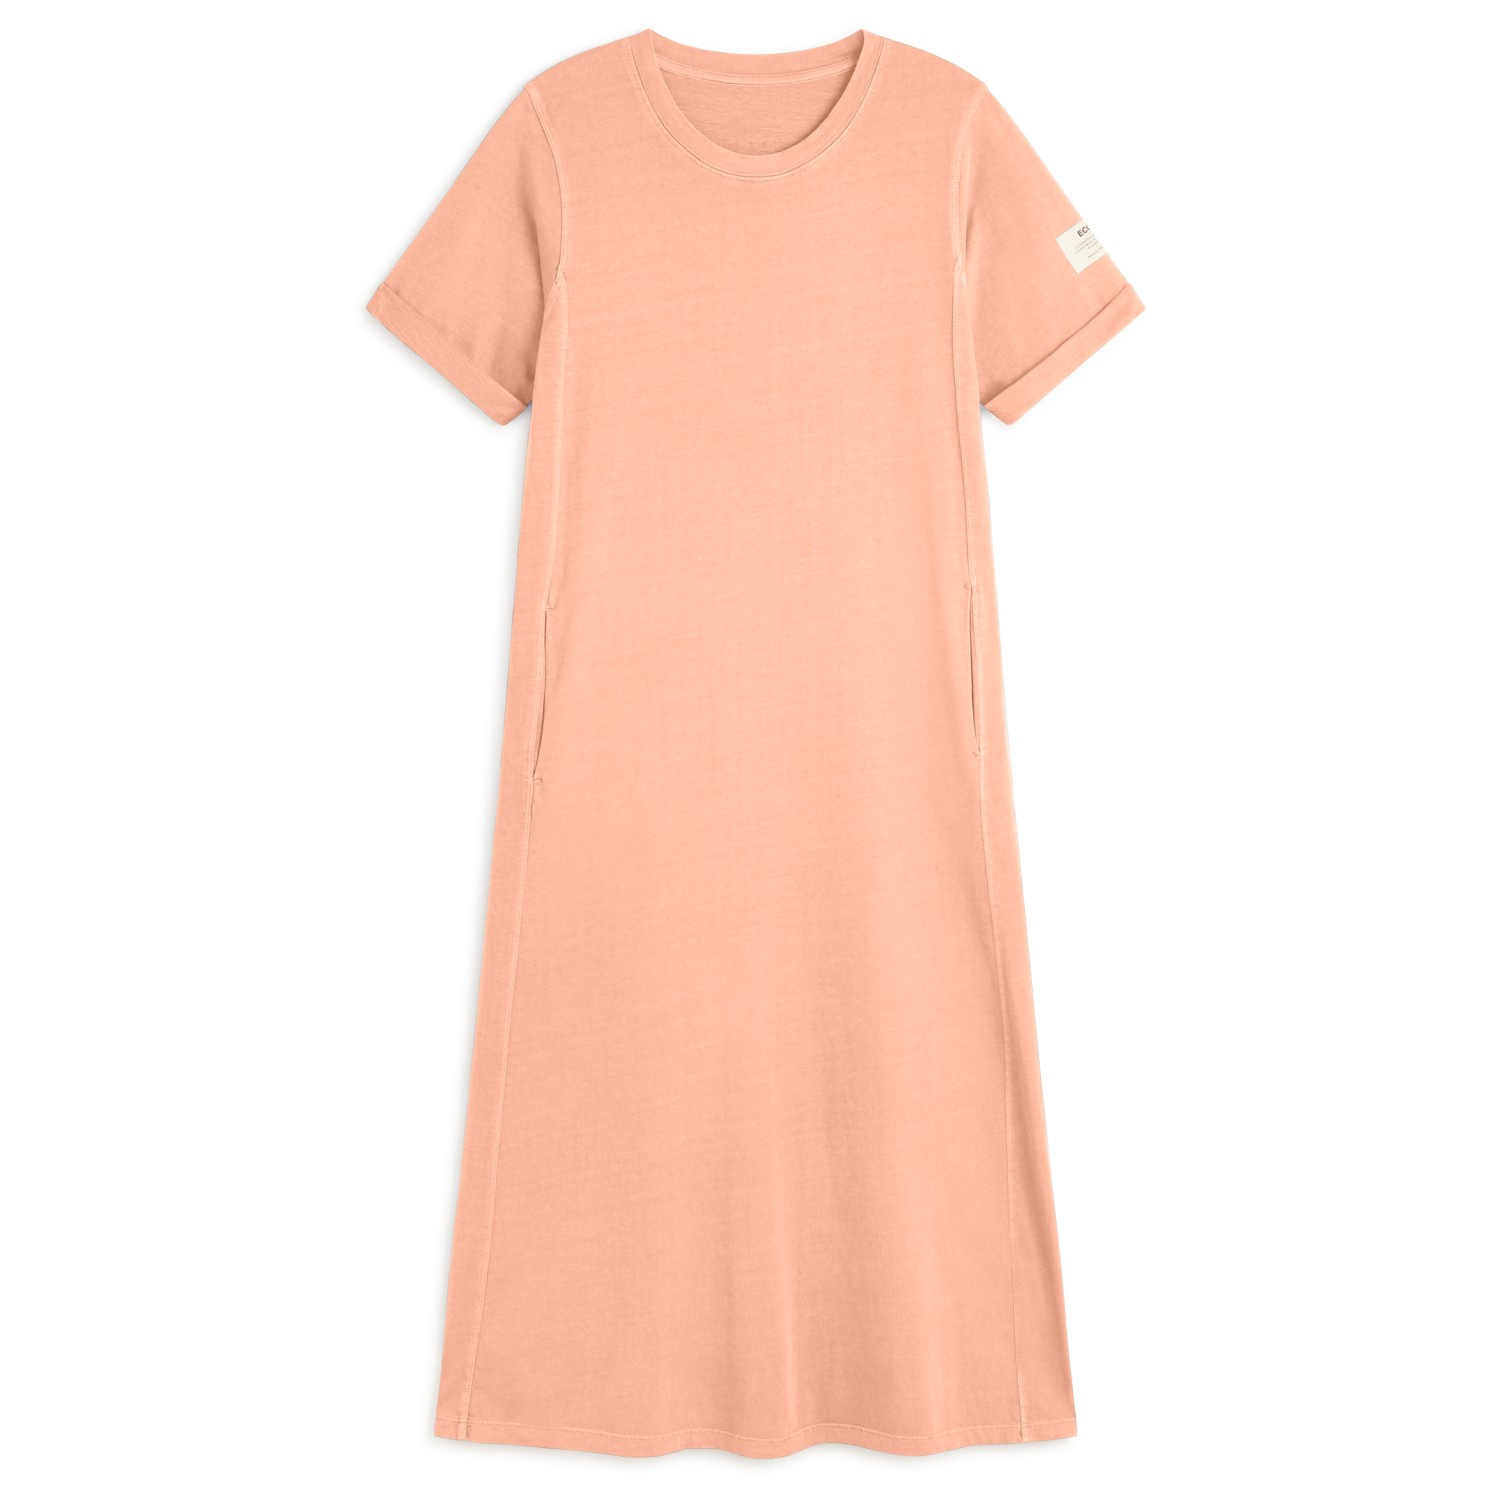 Платье Ecoalf Women's Argentoalf Dress, цвет Soft Coral платье твоё повседневное 42 размер